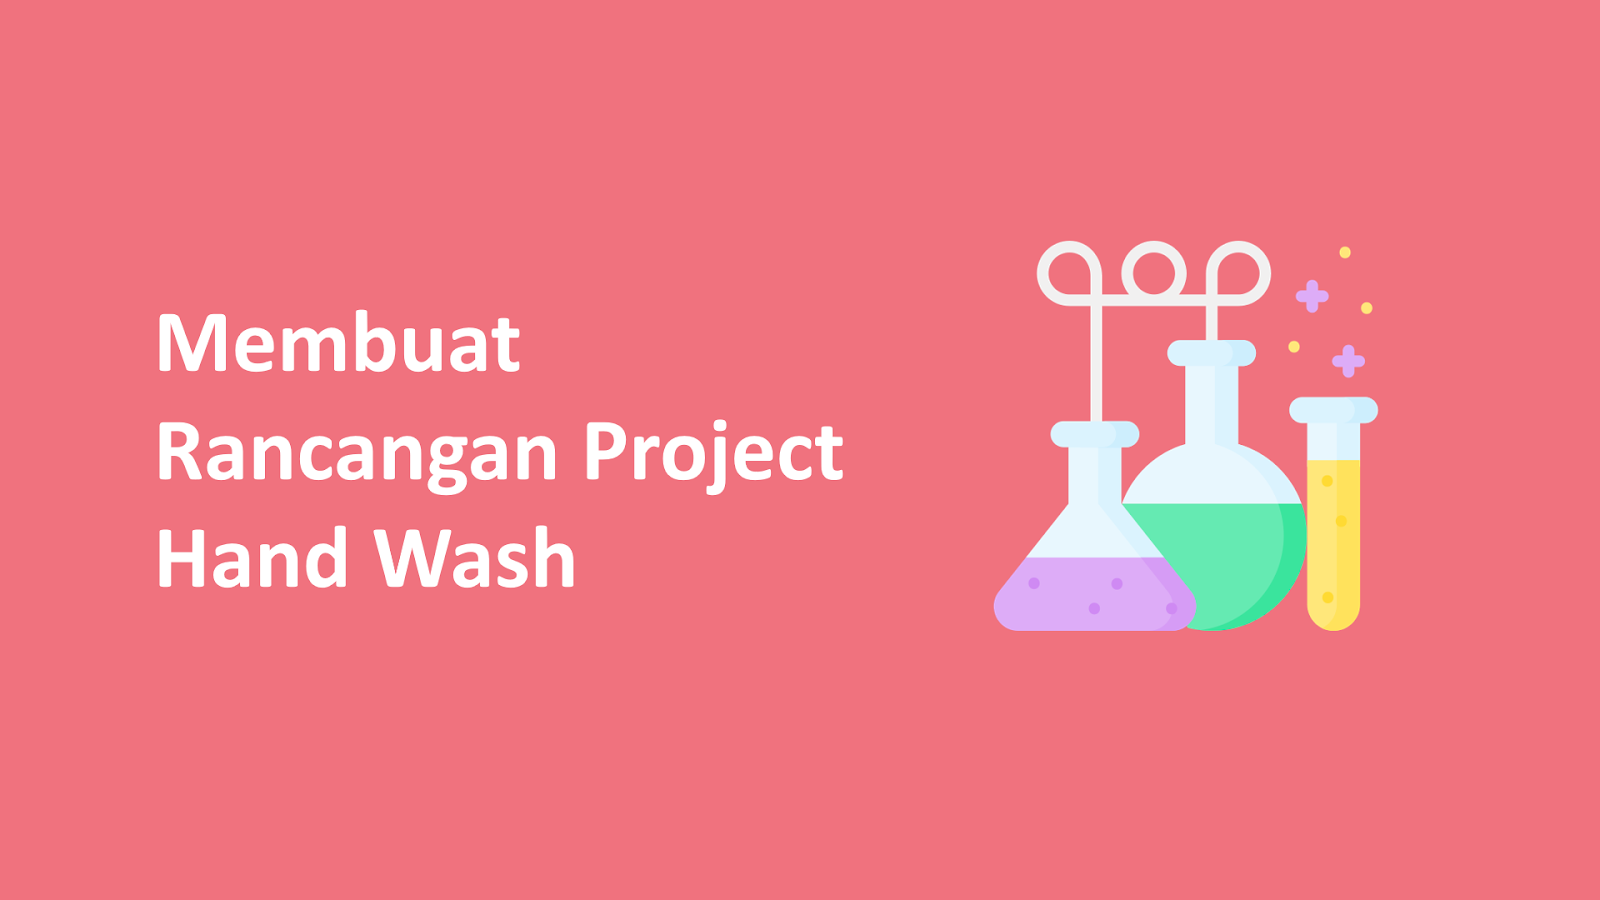 Membuat Rancangan Project Hand Wash